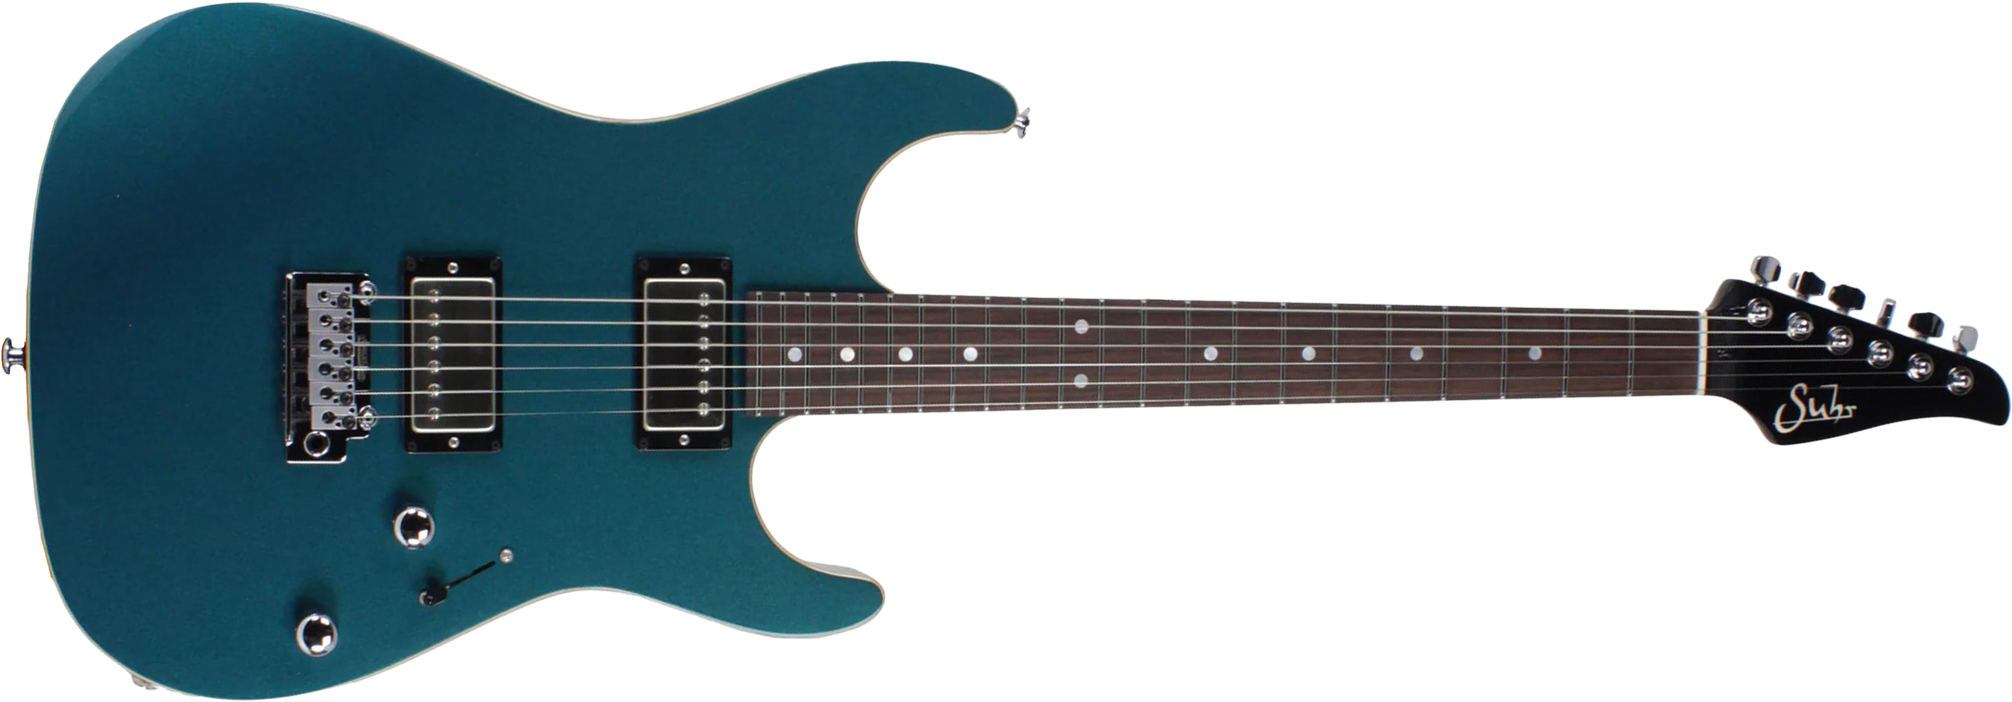 Suhr Pete Thorn Standard 01-sig-0012 Signature 2h Trem Rw - Ocean Turquoise Metallic - Guitare Électrique Forme Str - Main picture